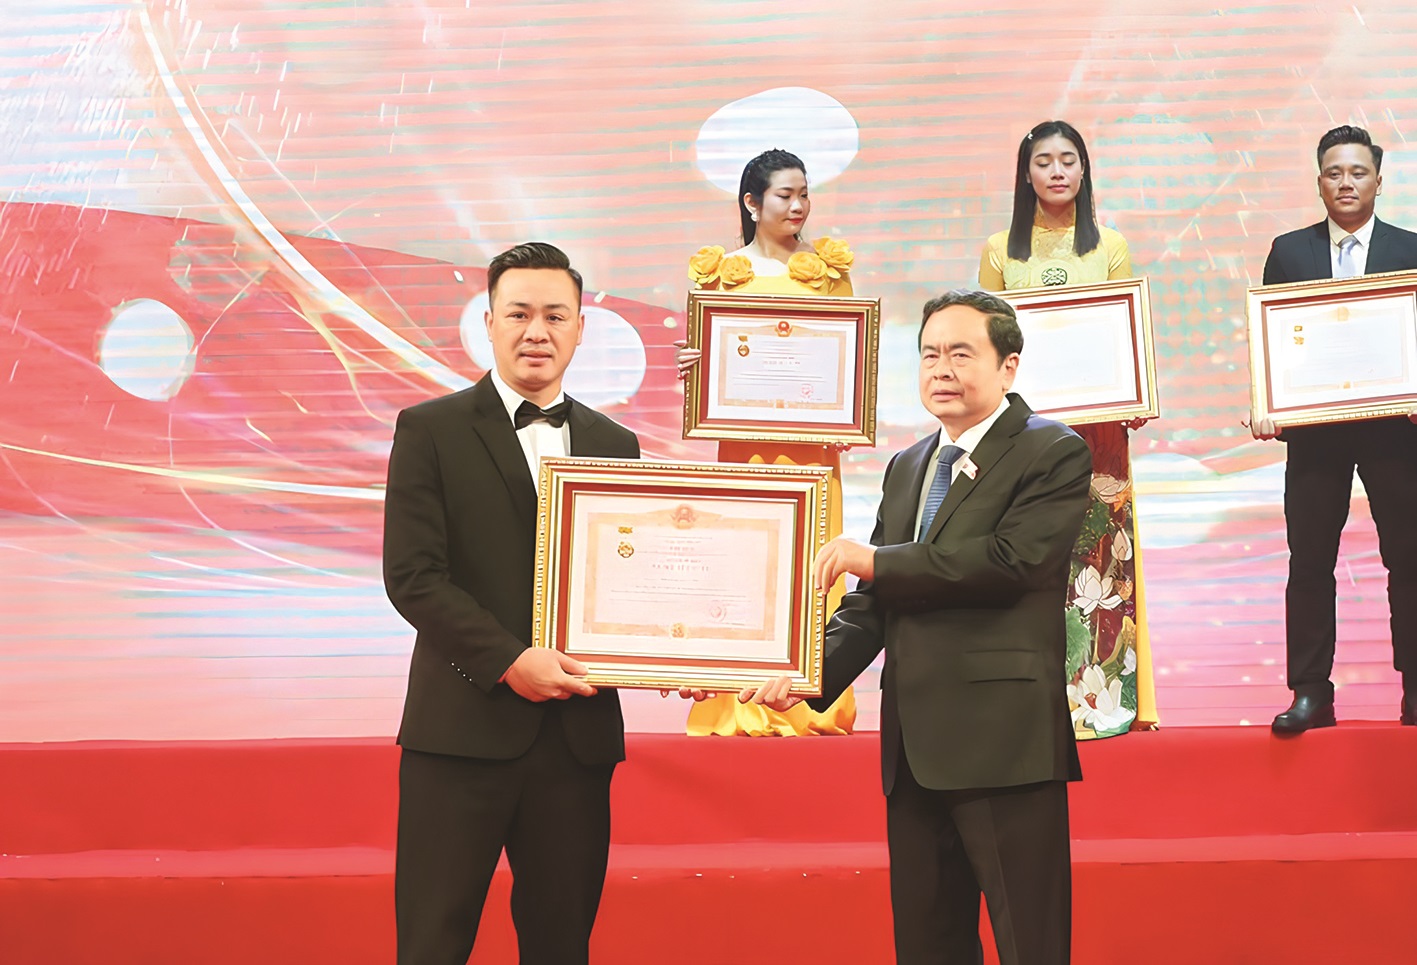 Hơn 20 năm làm nghề, diễn viên Phạm Quang Ánh ghi dấu ấn cả trên sân khấu kịch và các vai diễn trong phim điện ảnh, phim truyền hình. Đầu năm 2024, anh vinh dự được Nhà nước trao tặng danh hiệu Nghệ sĩ ưu tú.